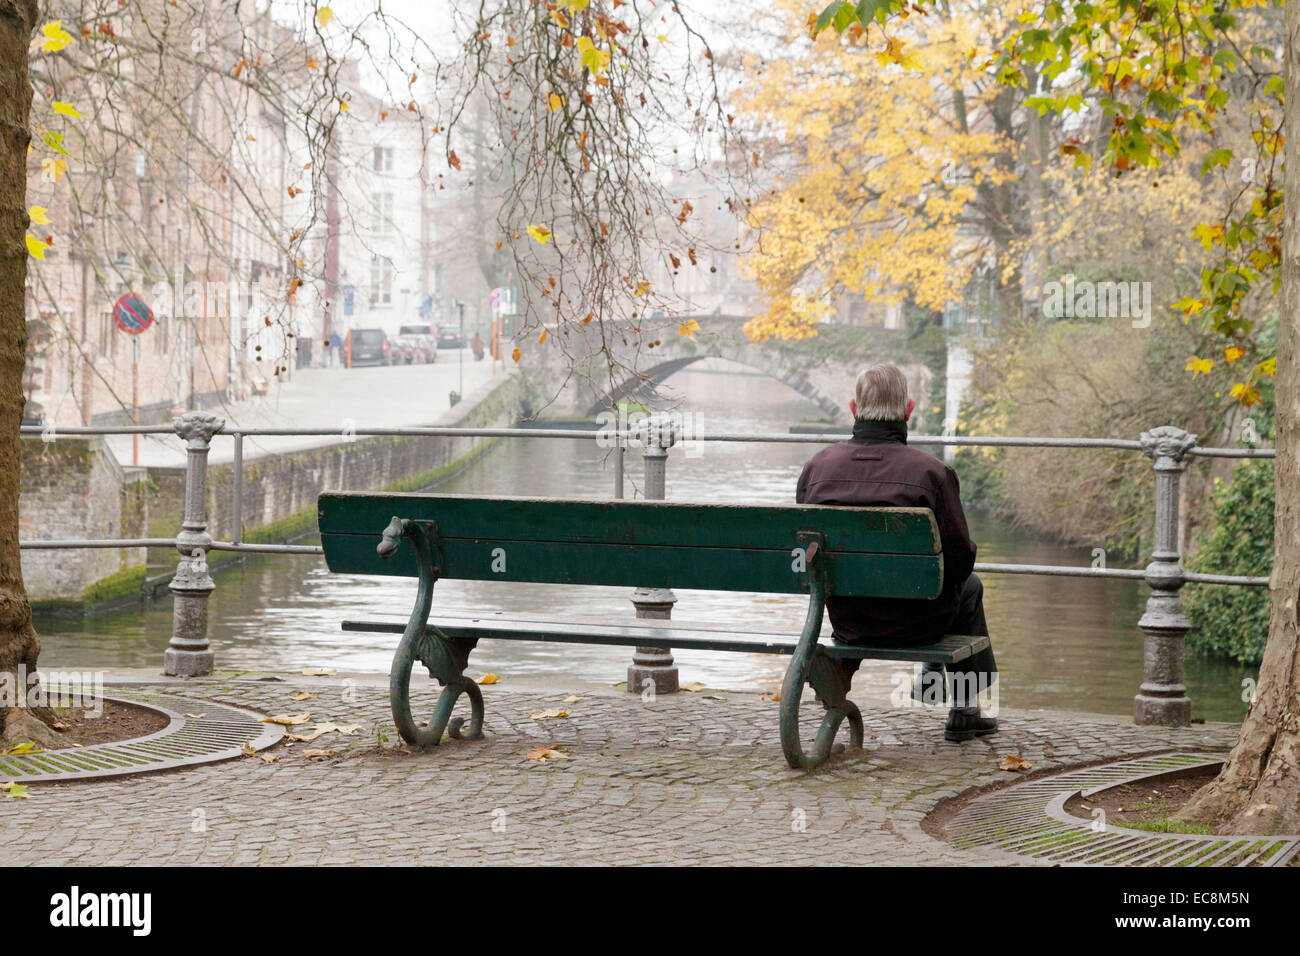 Rückansicht eines alten Mannes sitzen auf einer Bank, Blick auf einen Kanal im Herbst, Brügge, Belgien. Konzept der "Herbst des Lebens" Stockfoto